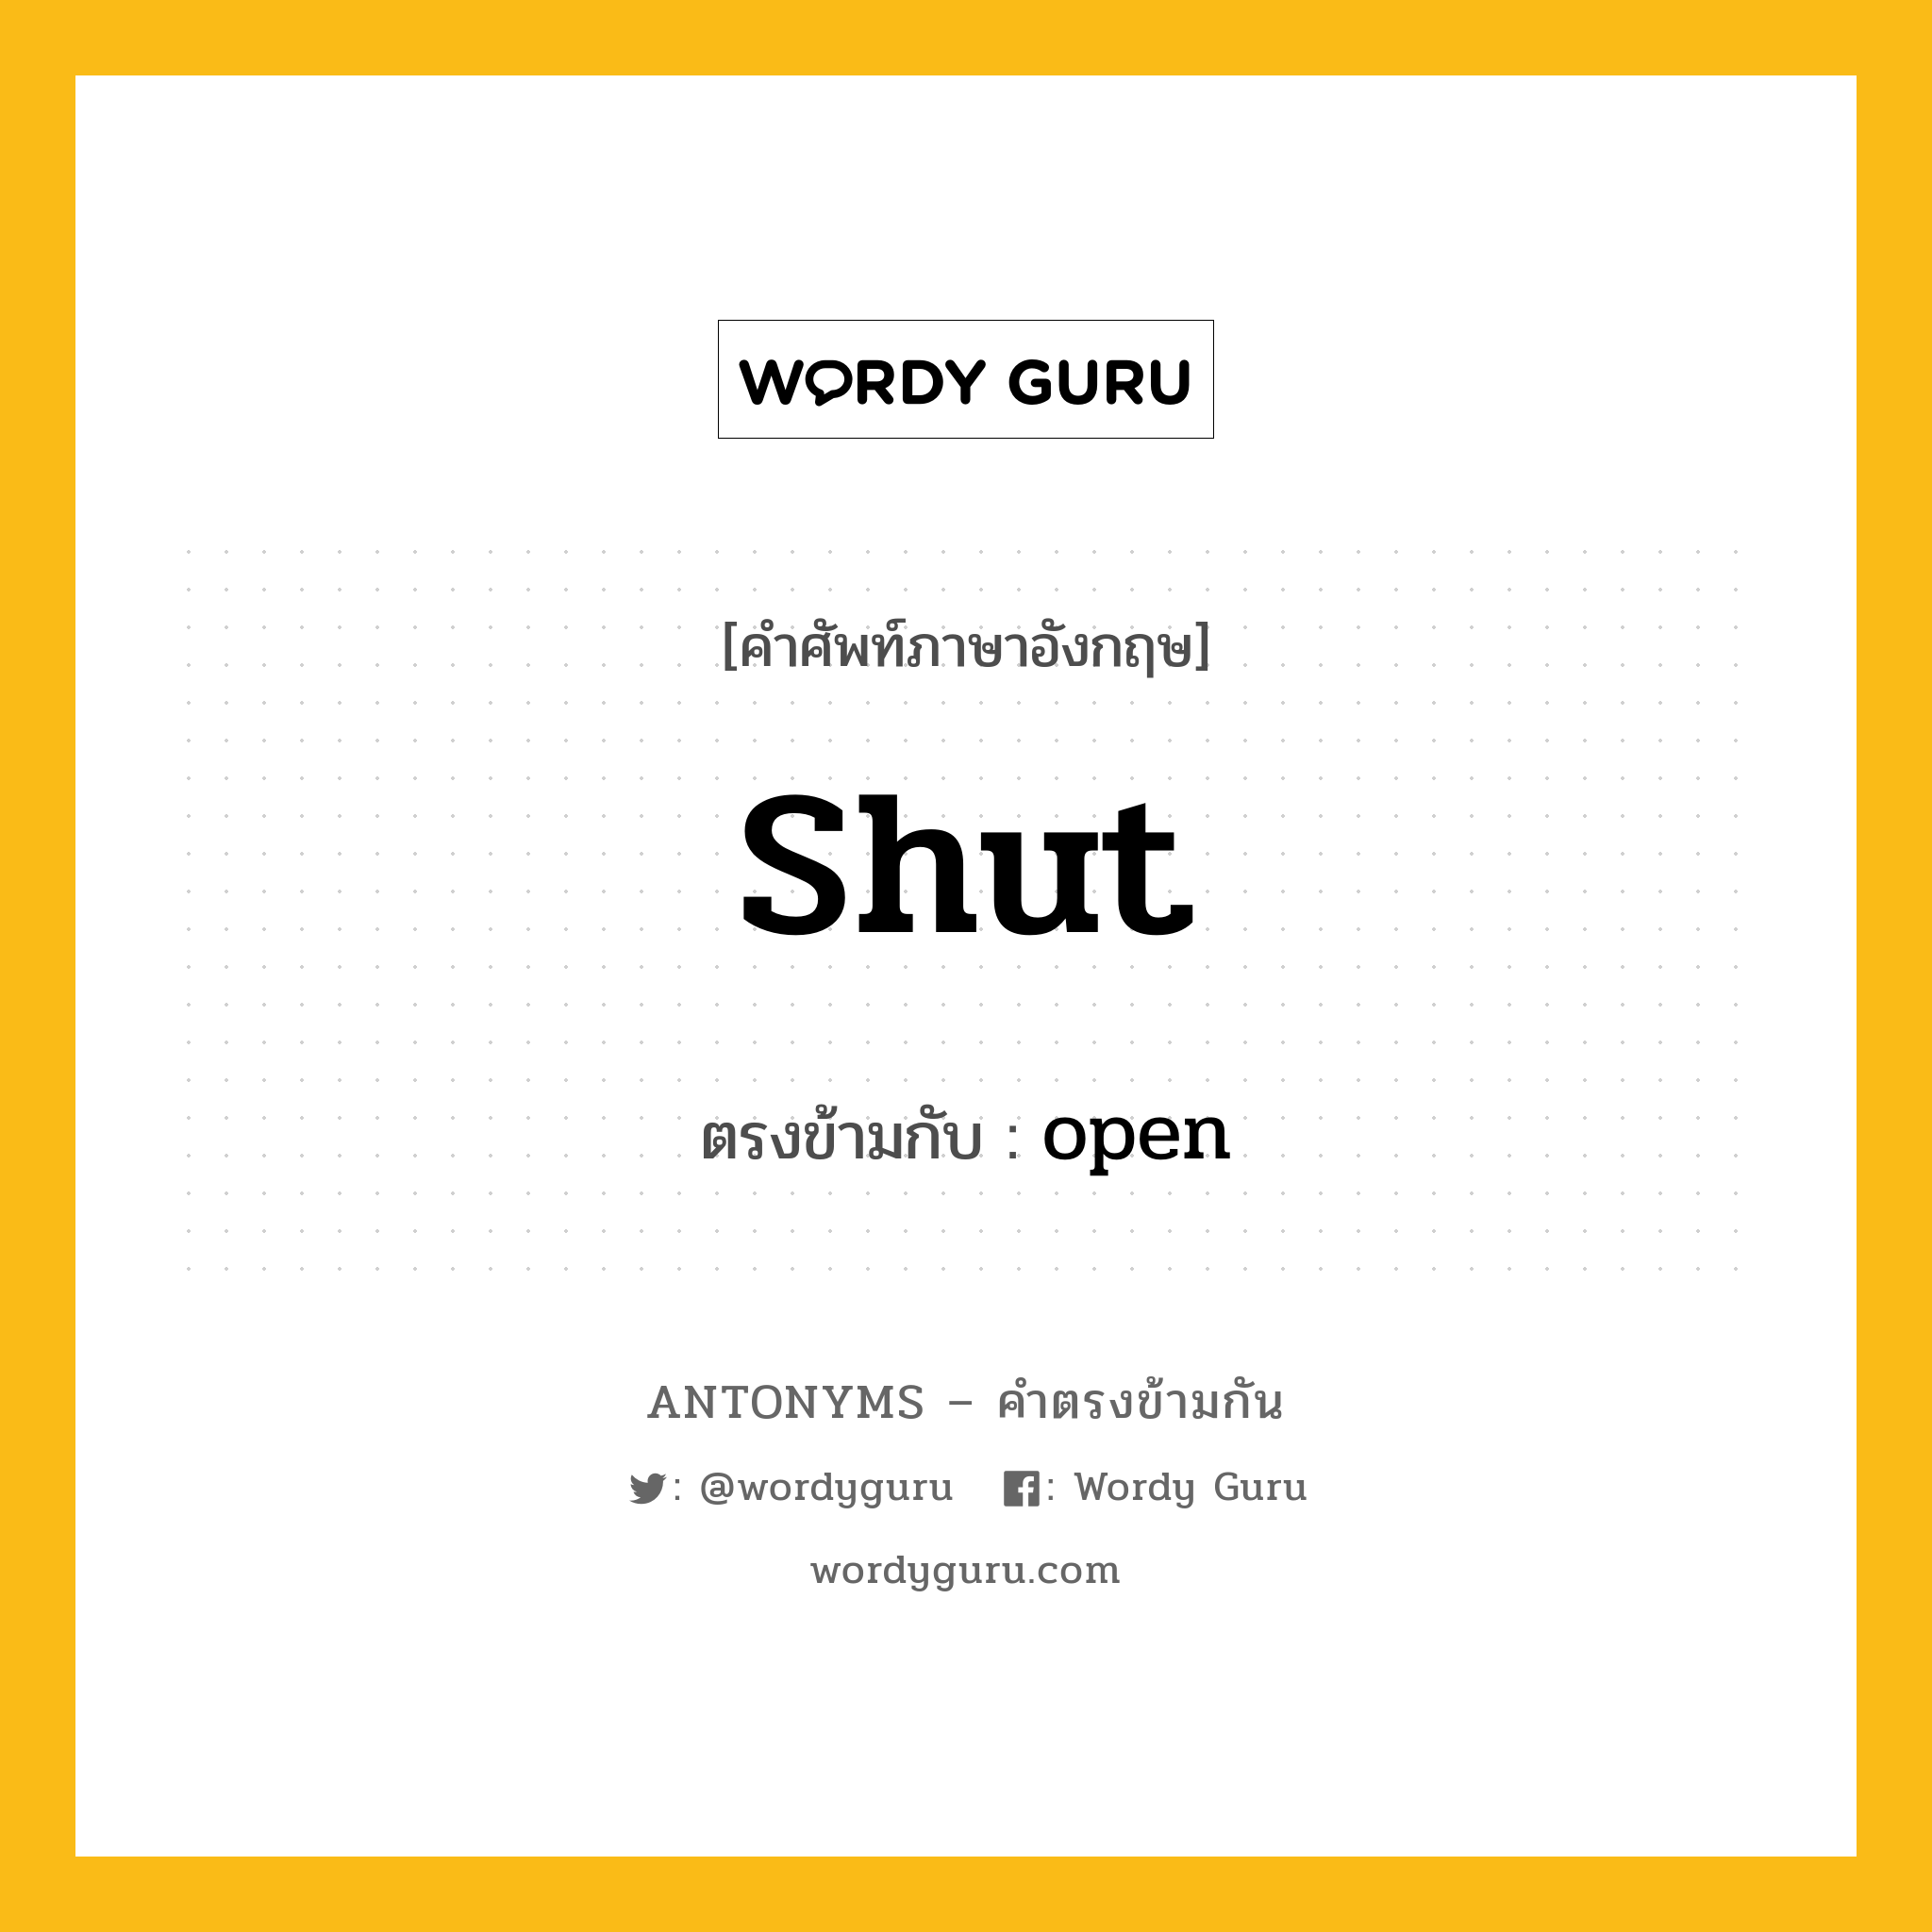 shut เป็นคำตรงข้ามกับคำไหนบ้าง?, คำศัพท์ภาษาอังกฤษ shut ตรงข้ามกับ open หมวด open